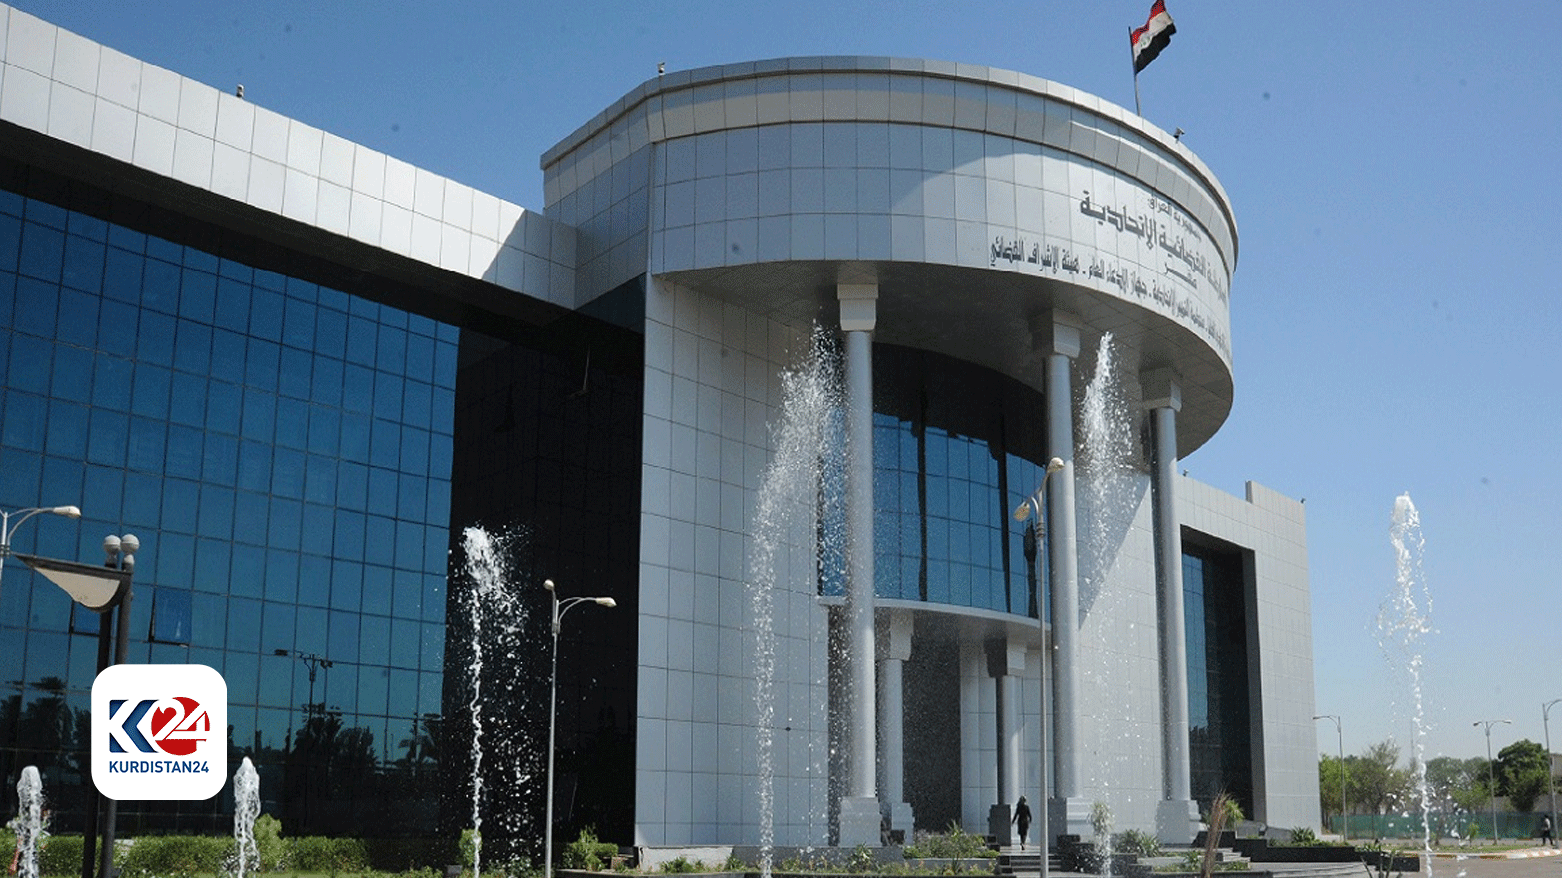 المحكمة الاتحادية: الجهة المختصة في التنسيق بين ماليتي أربيل وبغداد هي مالية الإقليم